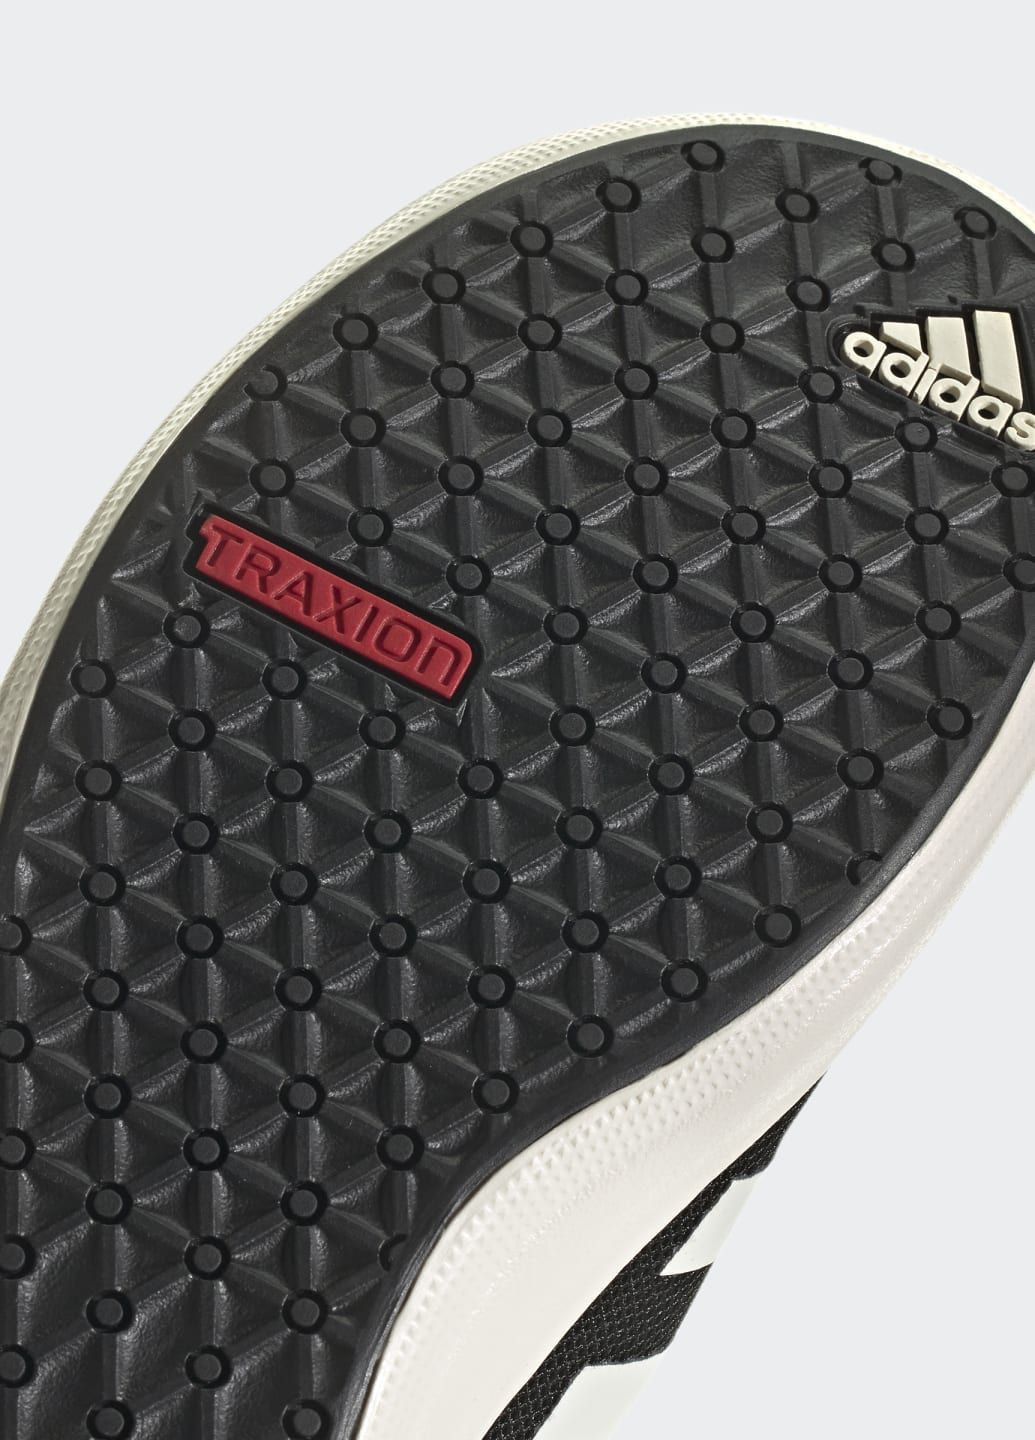 Черные всесезонные кроссовки-слипоны terrex boat slip-on dlx adidas